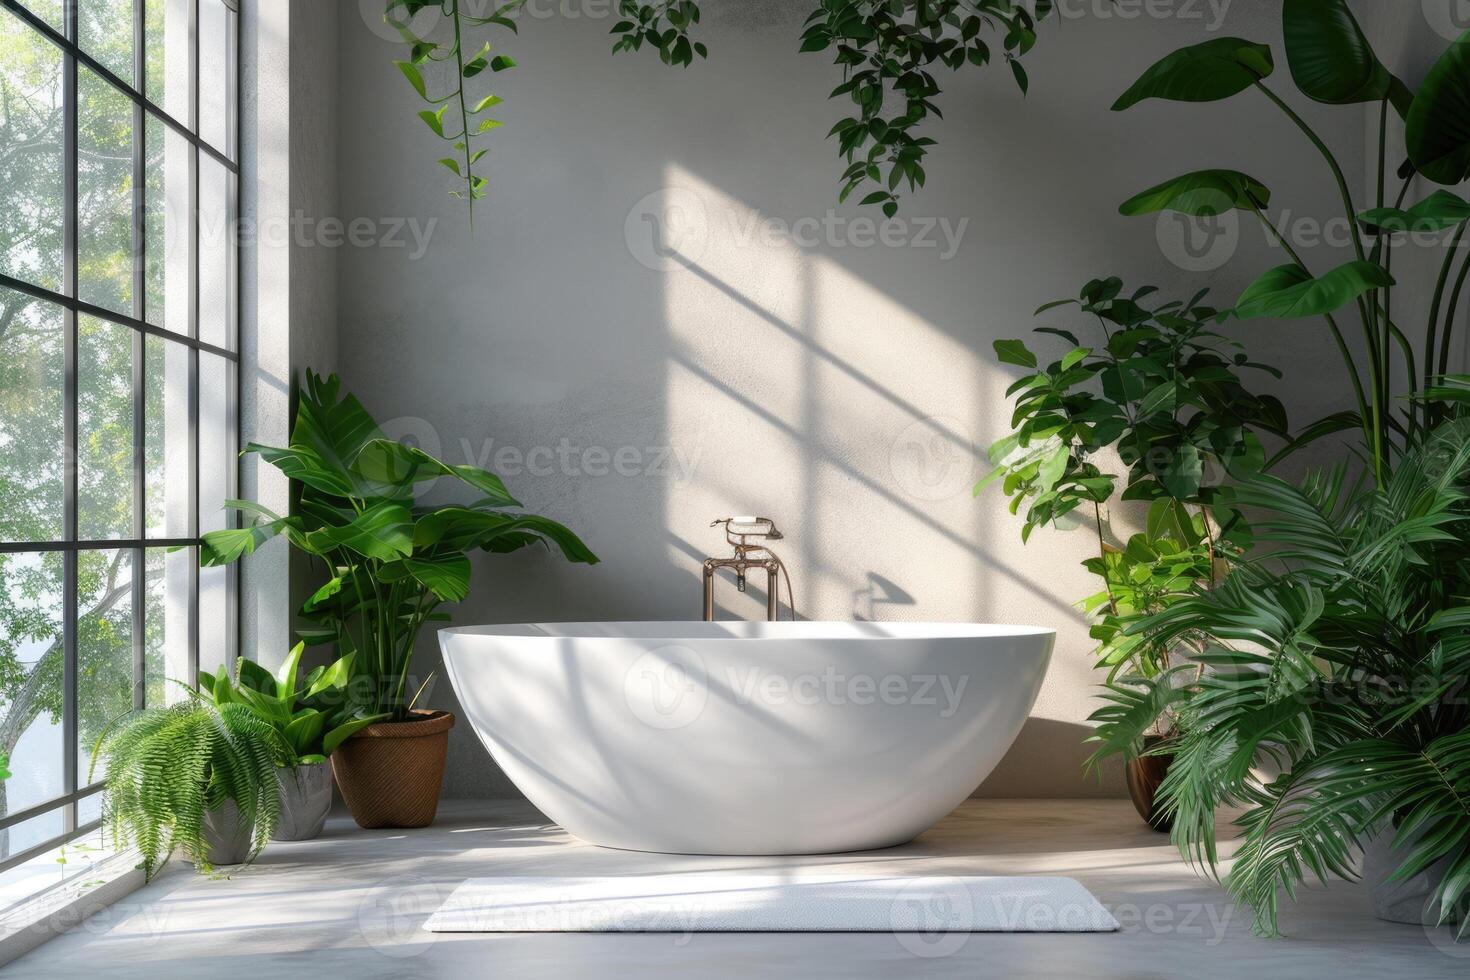 ai gerado moderno banheiro minimalista projeto, independente banheira, ecológico decoração iluminado cercado de exuberante interior plantas e banhado dentro natural luz, bem estar e tranquilidade às casa foto